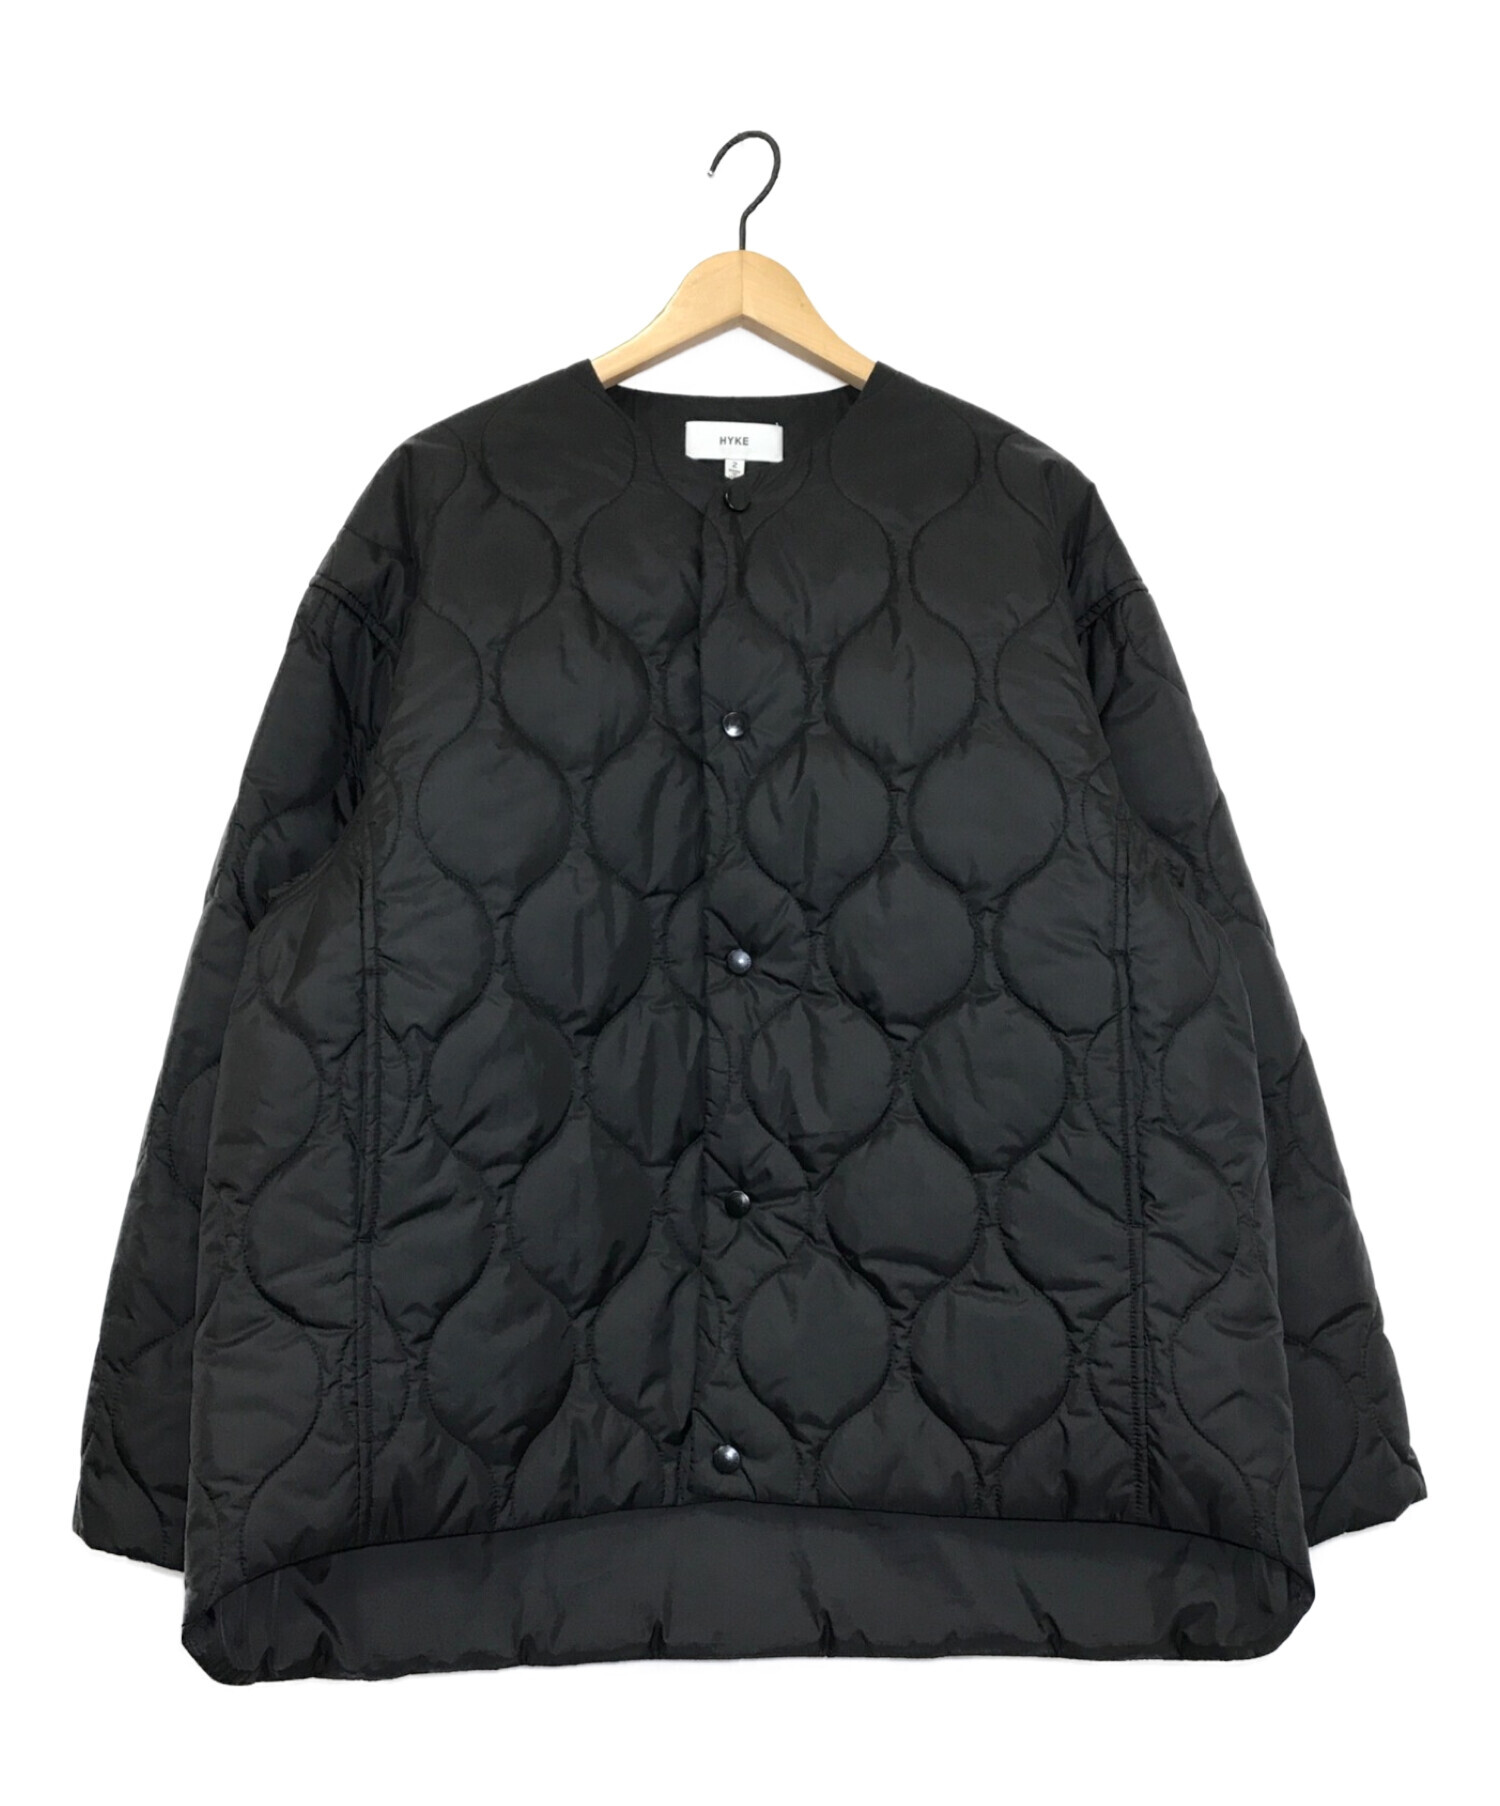 HYKE (ハイク) キルティングジャケット ブラック サイズ:2